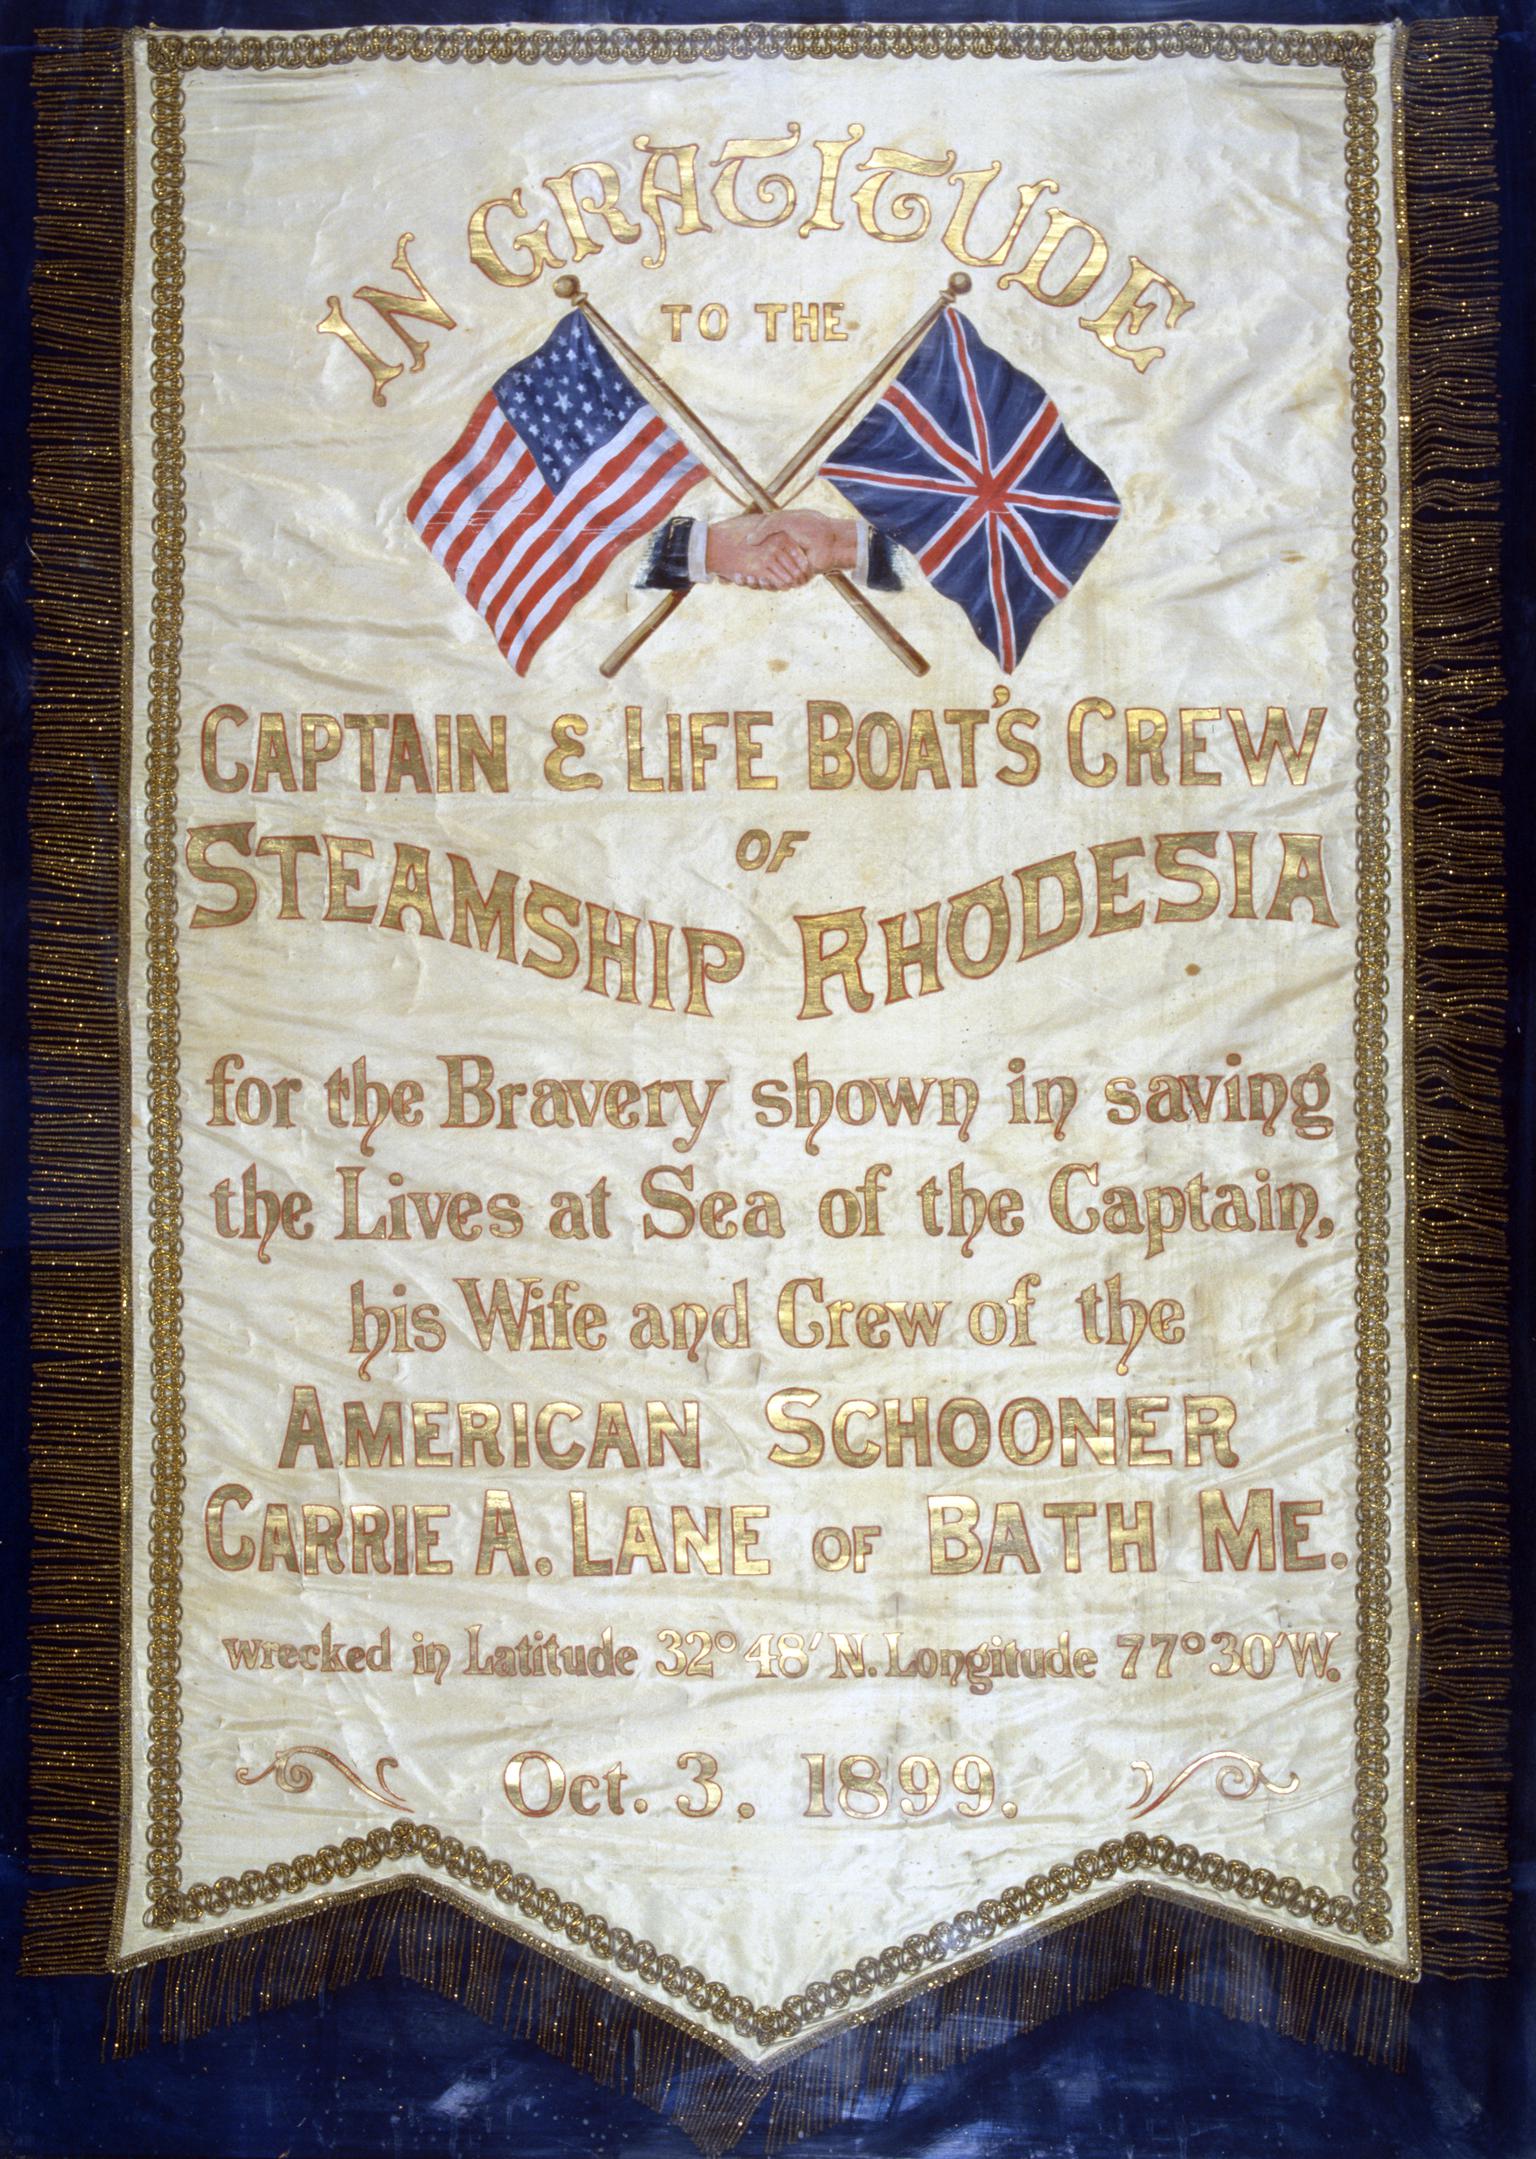 S.S. RHODESIA, address to captain & crew, 1899